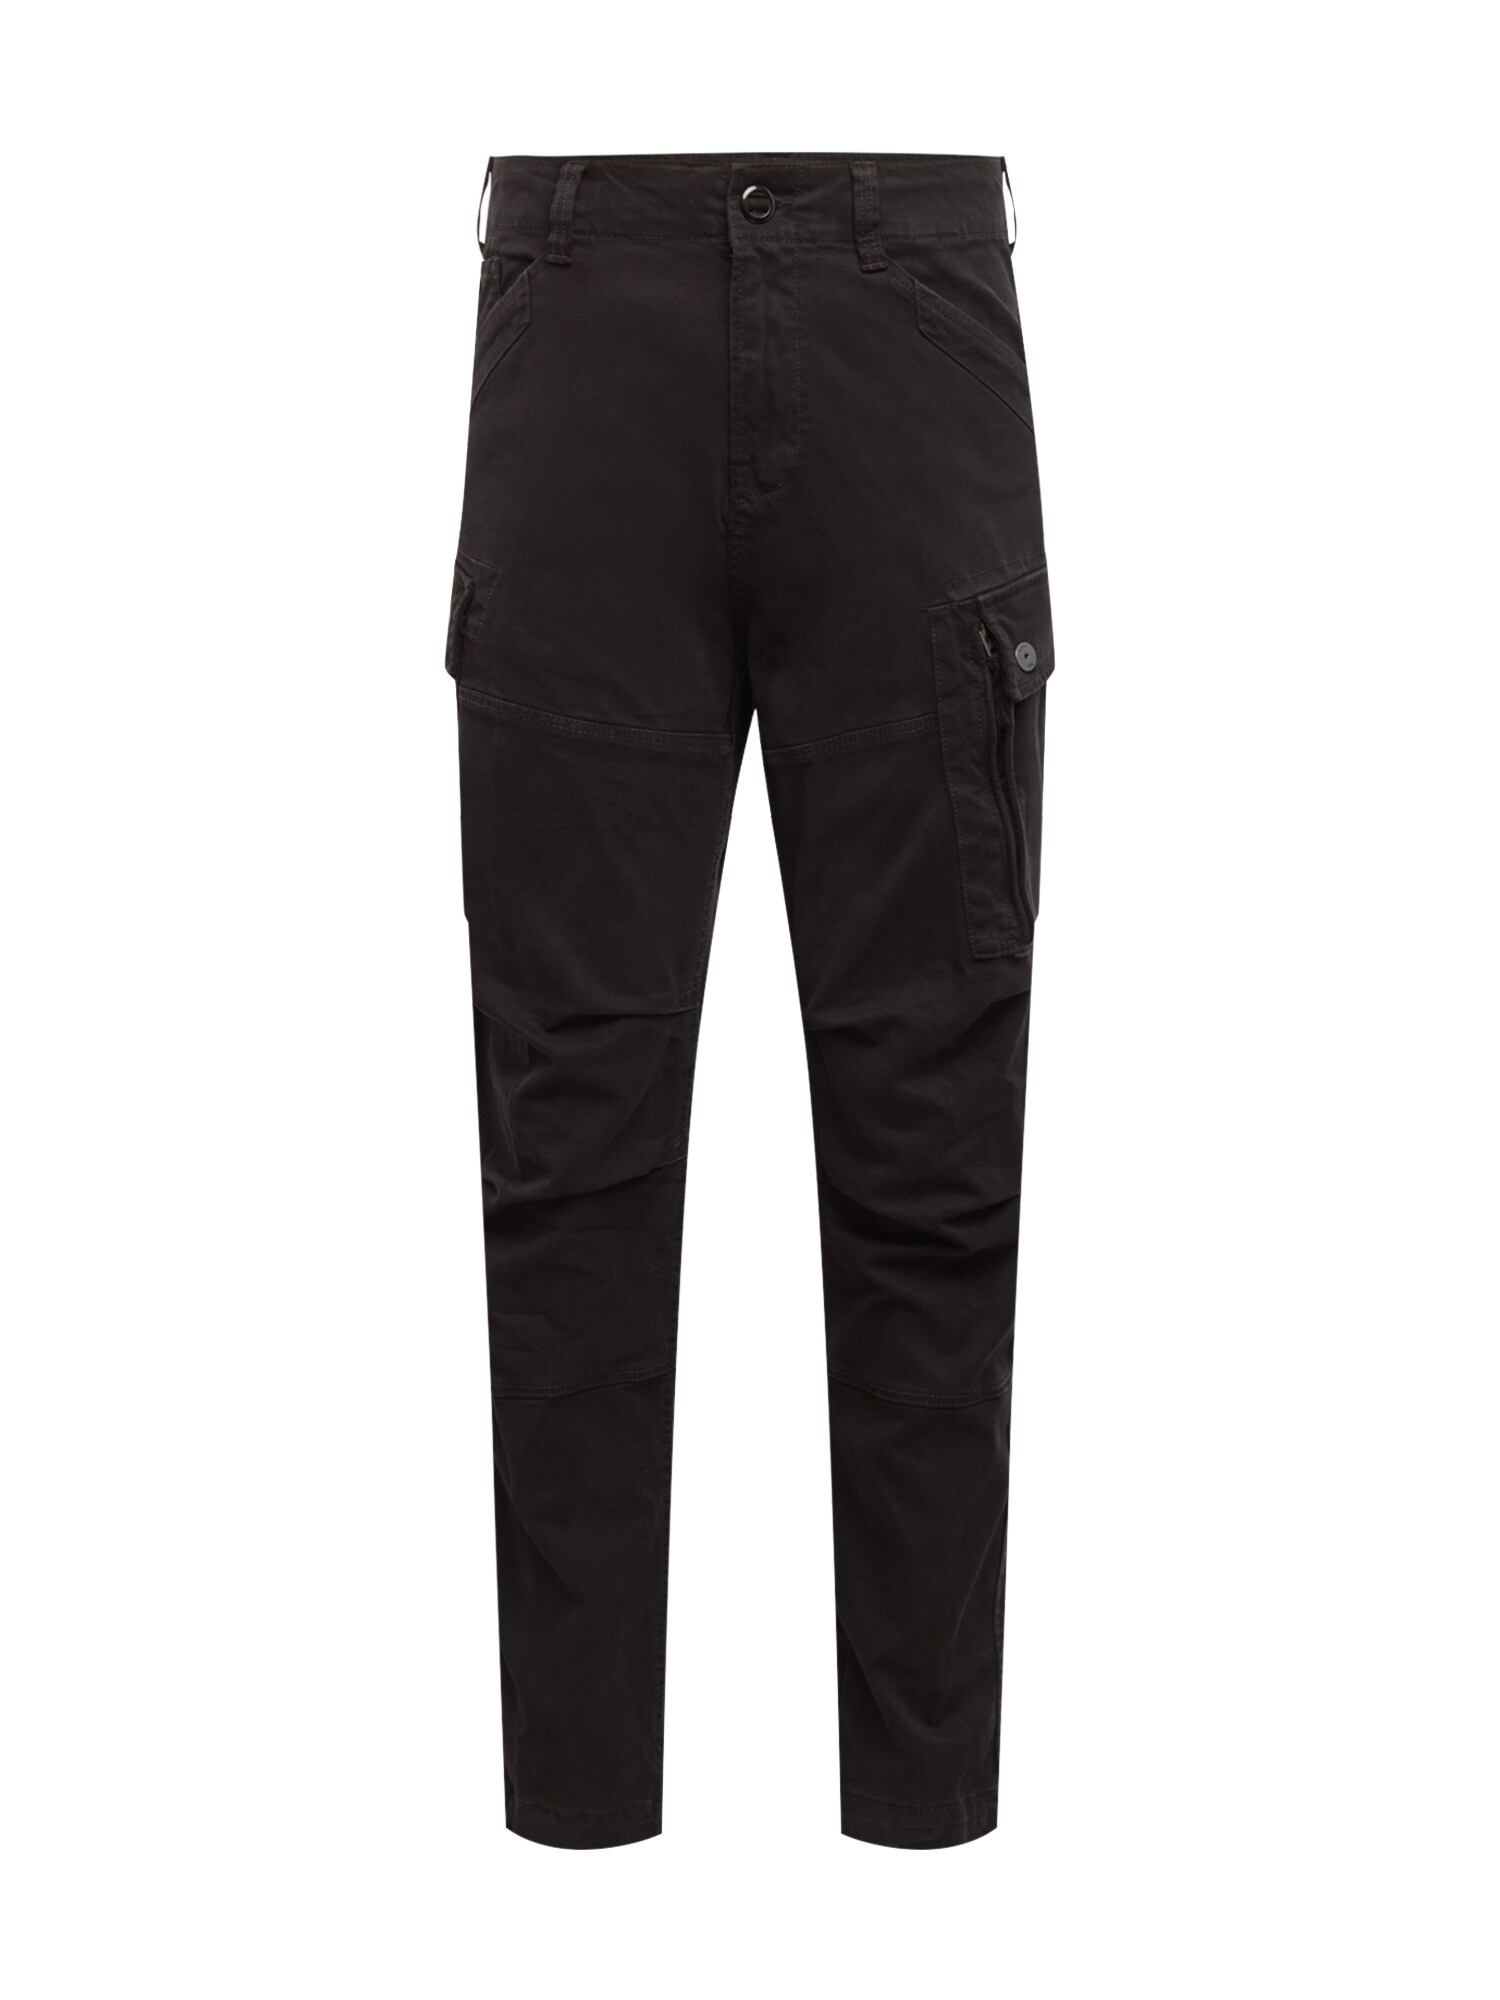 G-Star RAW Laisvo stiliaus kelnės 'Roxic straight tapered'  juodo džinso spalva